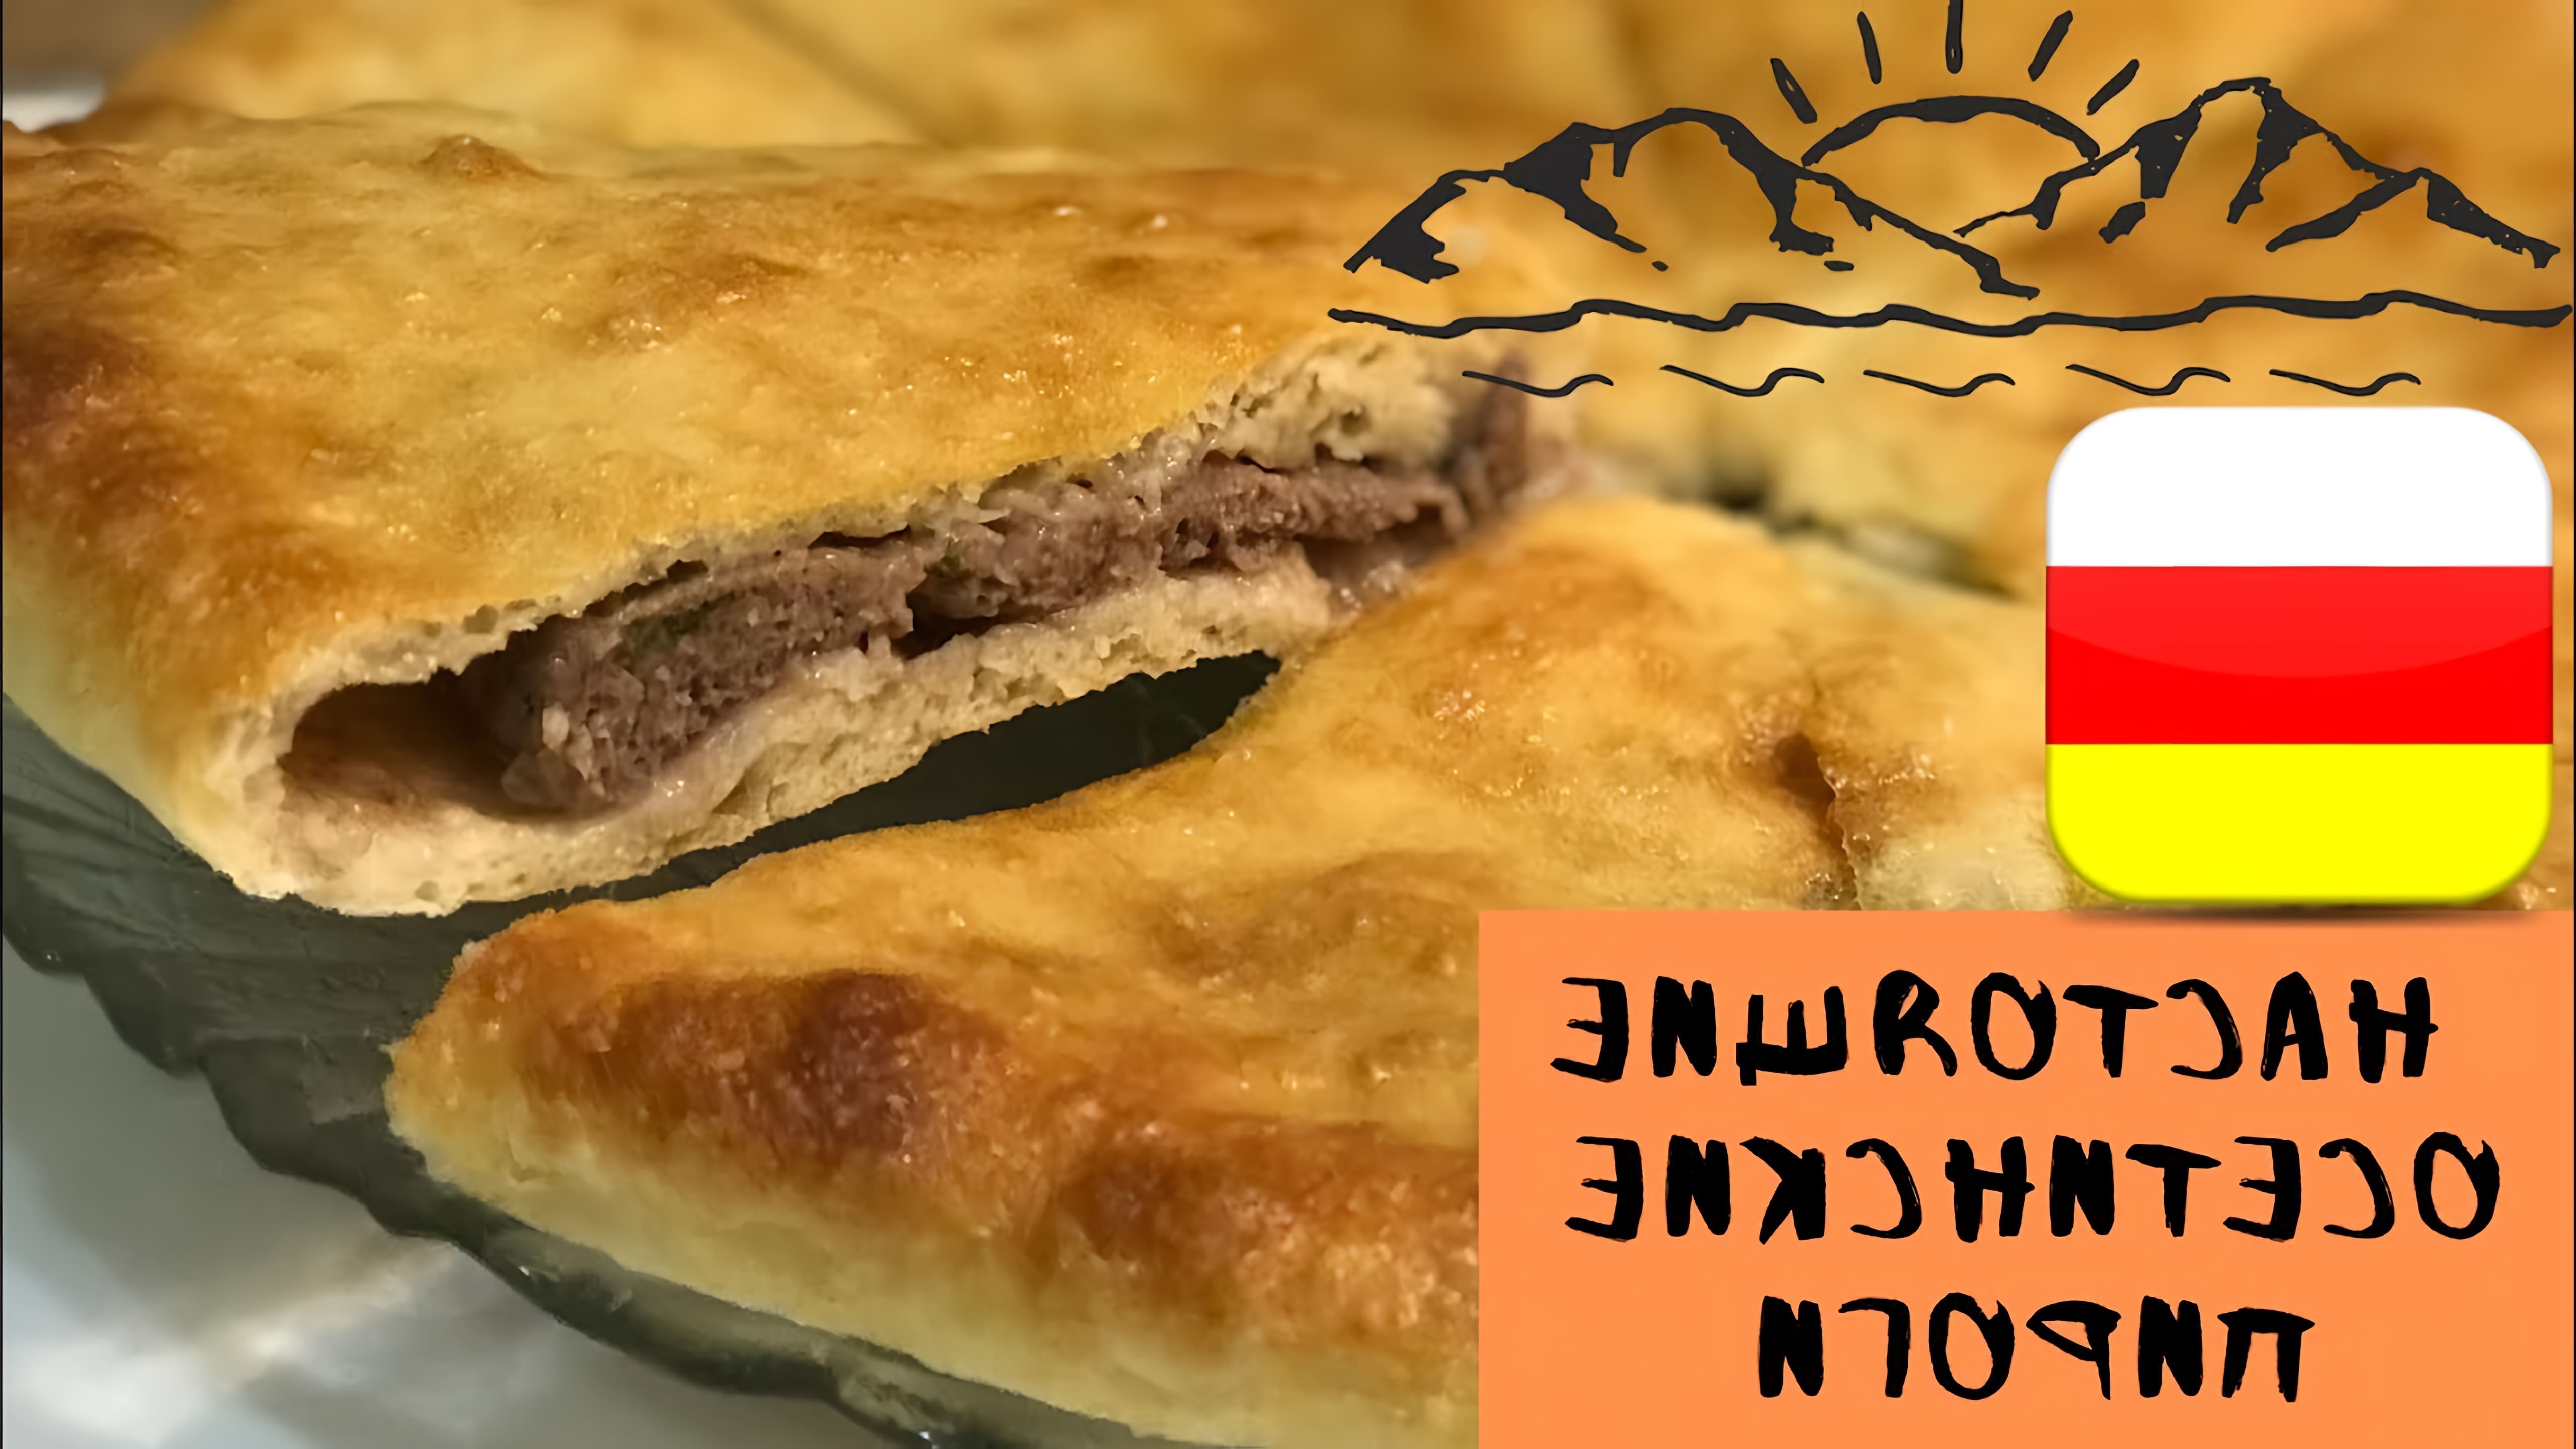 Осетинский пирог с мясом *Фыджын" - это традиционное блюдо осетинской кухни, которое готовится с использованием свежего мяса и ароматных специй